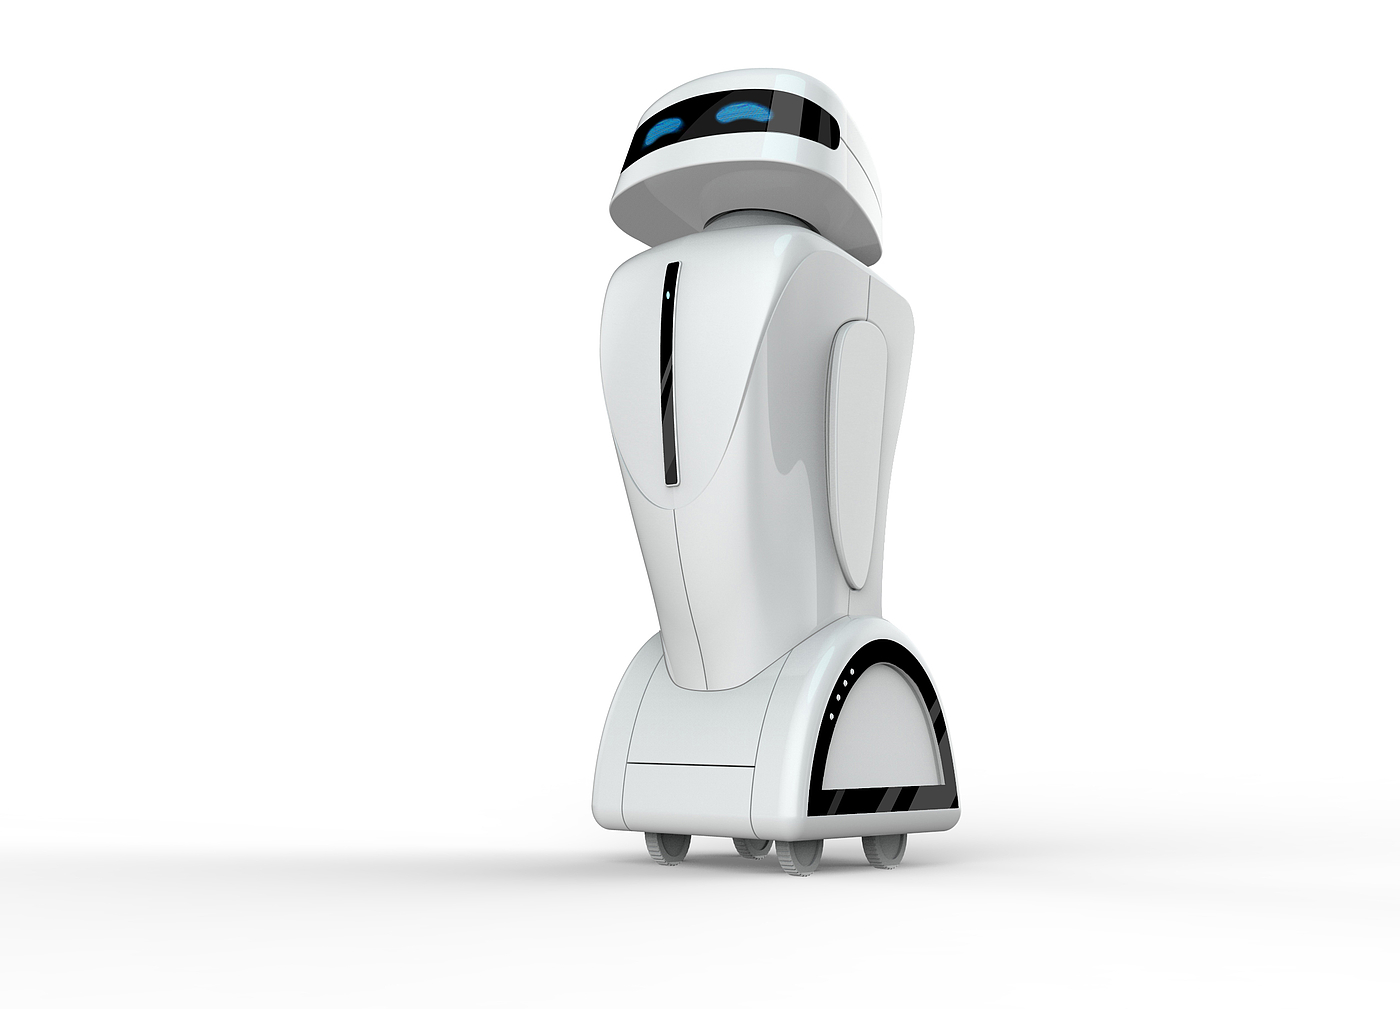 机器人助力酒店发挥科技狂想，迈入智能化新时代_酒店行业